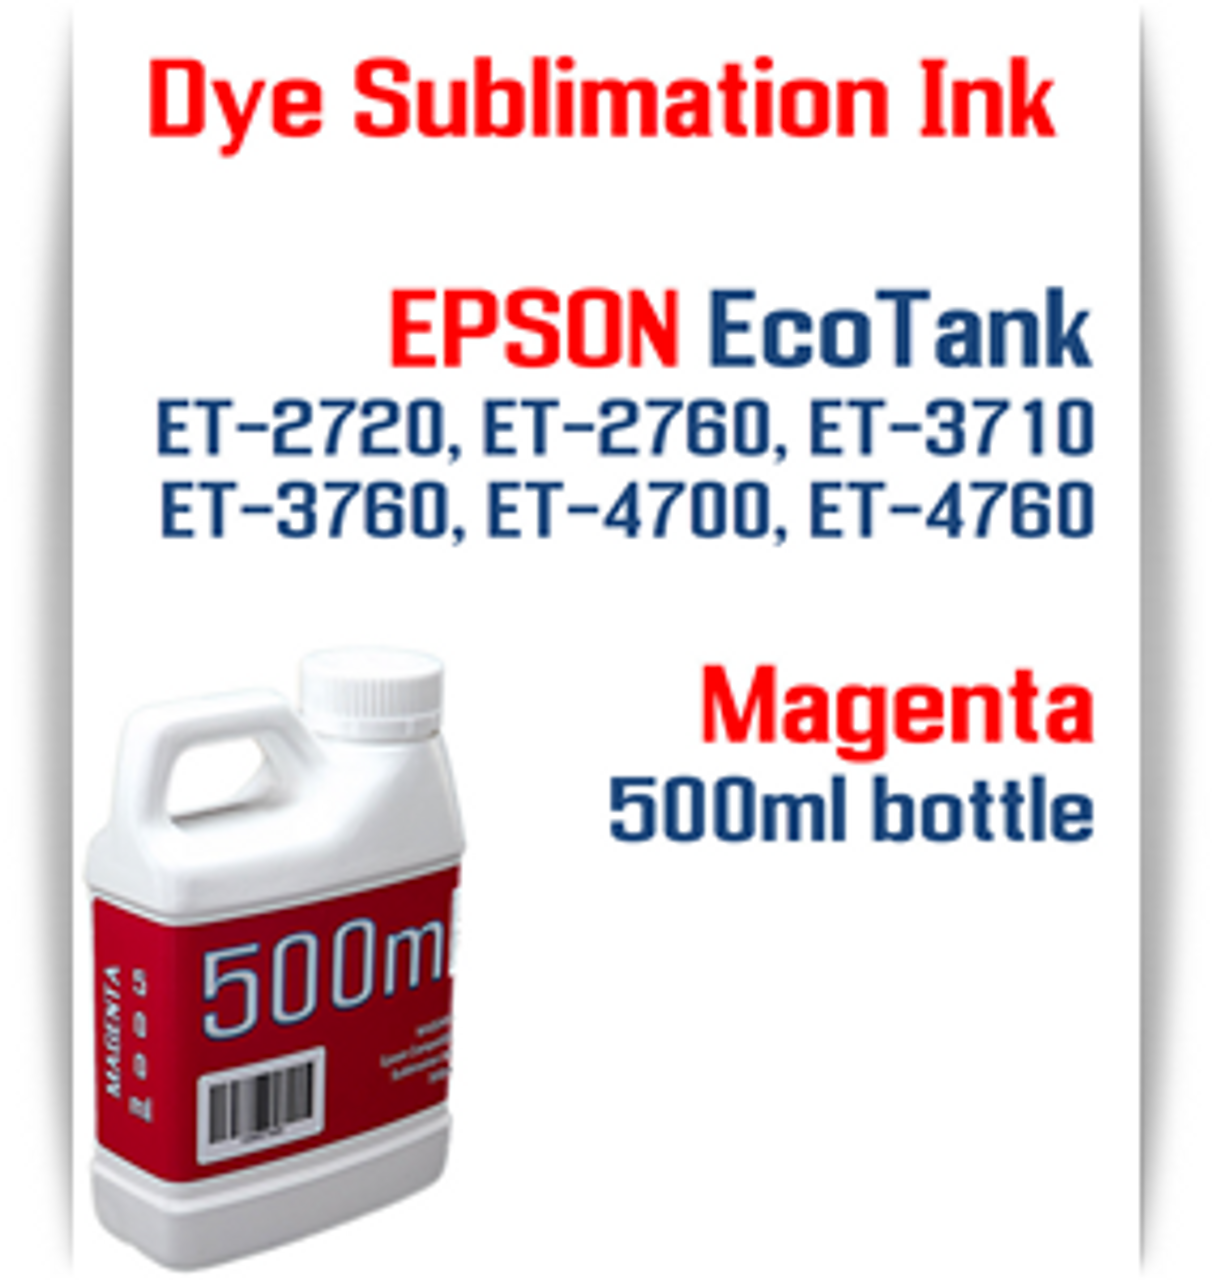 Magenta EPSON EcoTank ET-3710 ET-3760 Printer 500ml bottles Dye Sublimation Bottle Ink